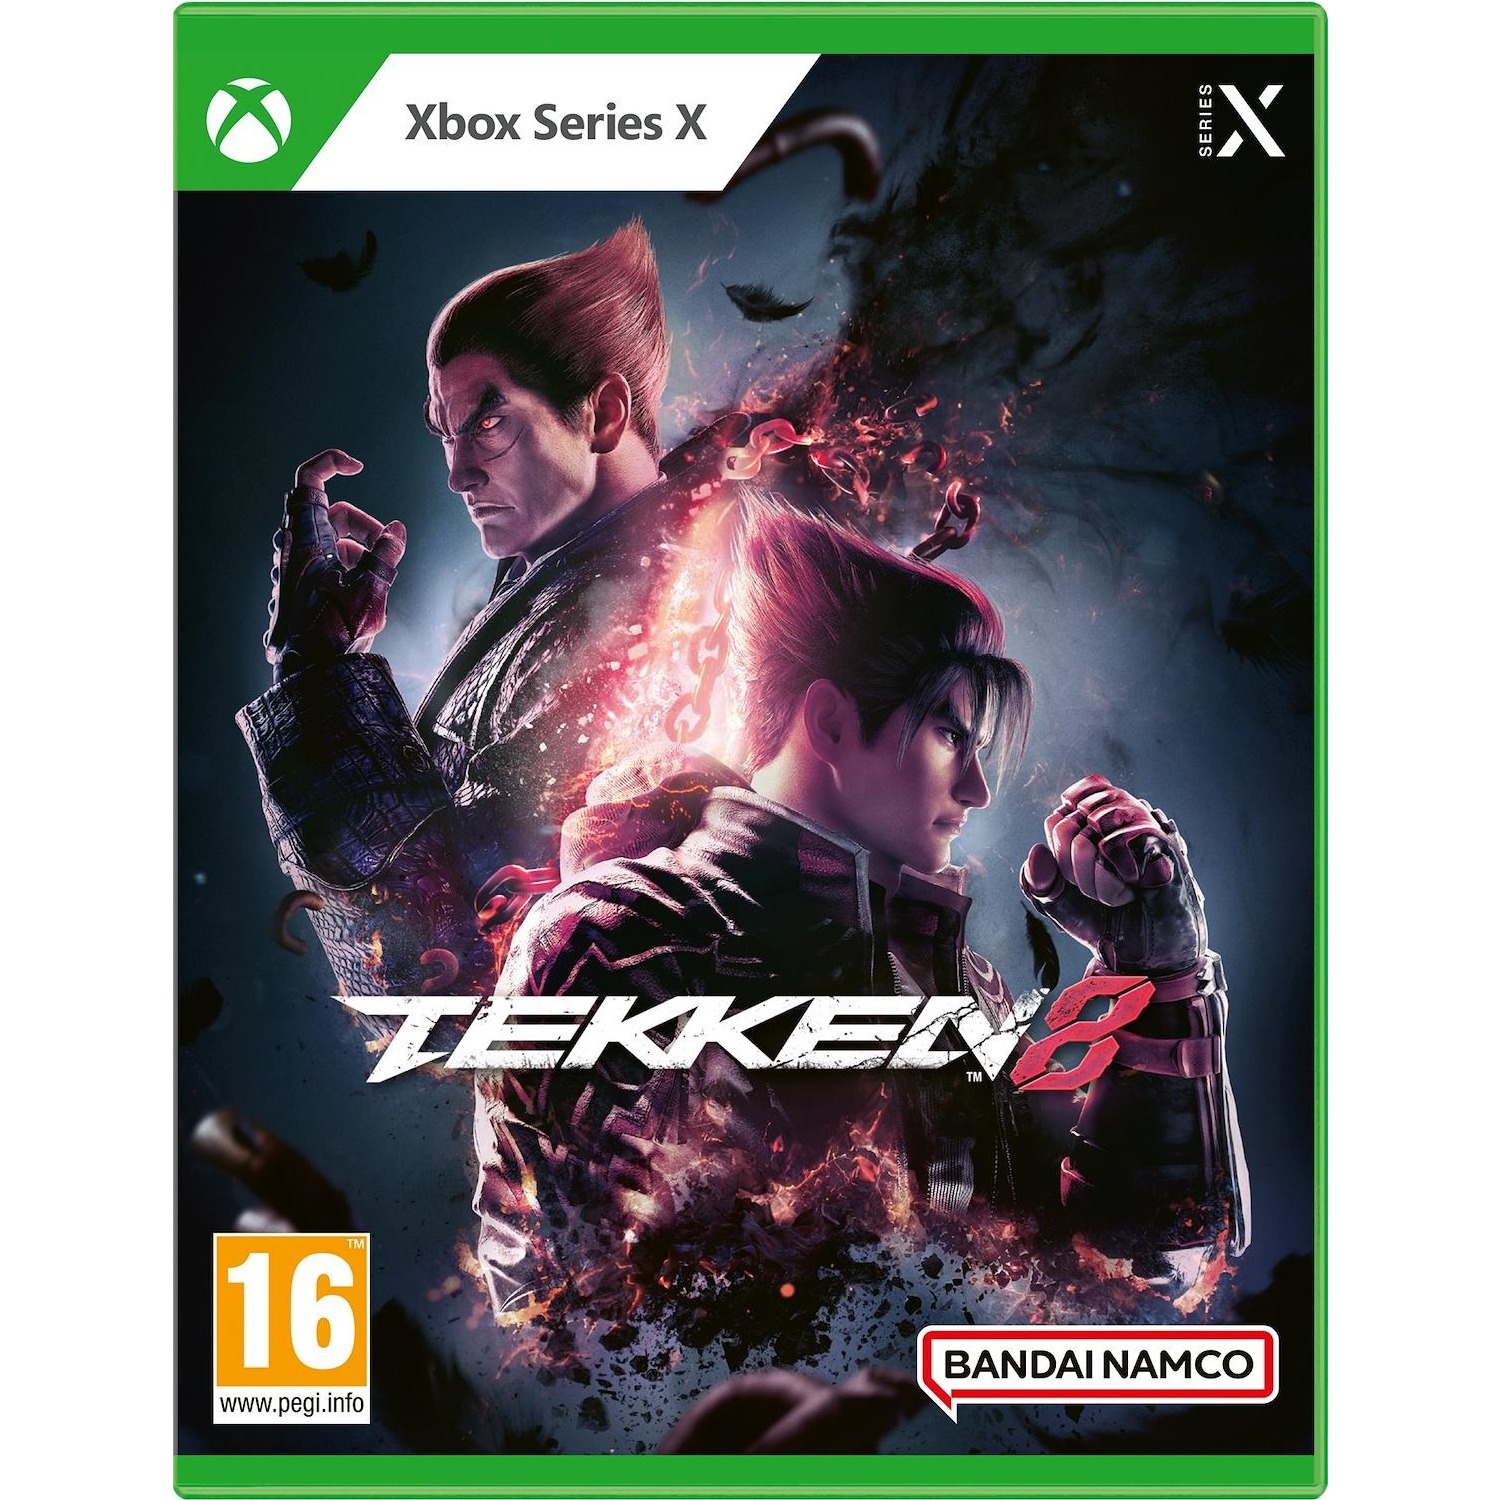 Immagine per Gioco XBOX Series X Tekken 8 Standard Edition da DIMOStore